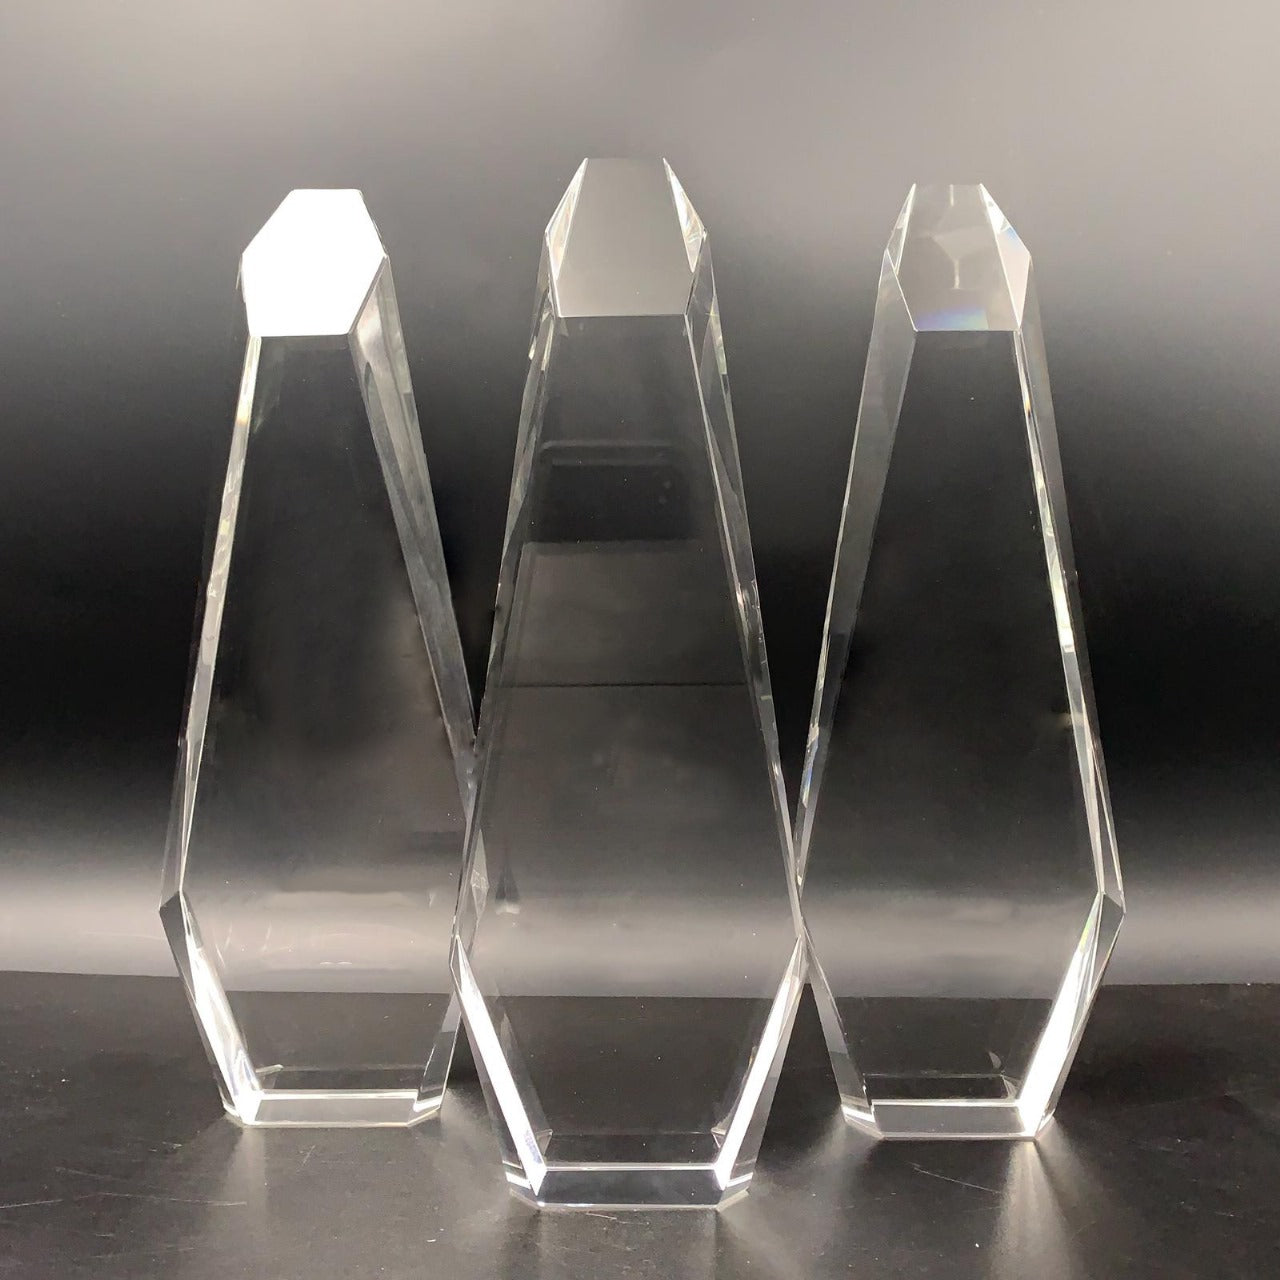 Prism Crown Achievement Award